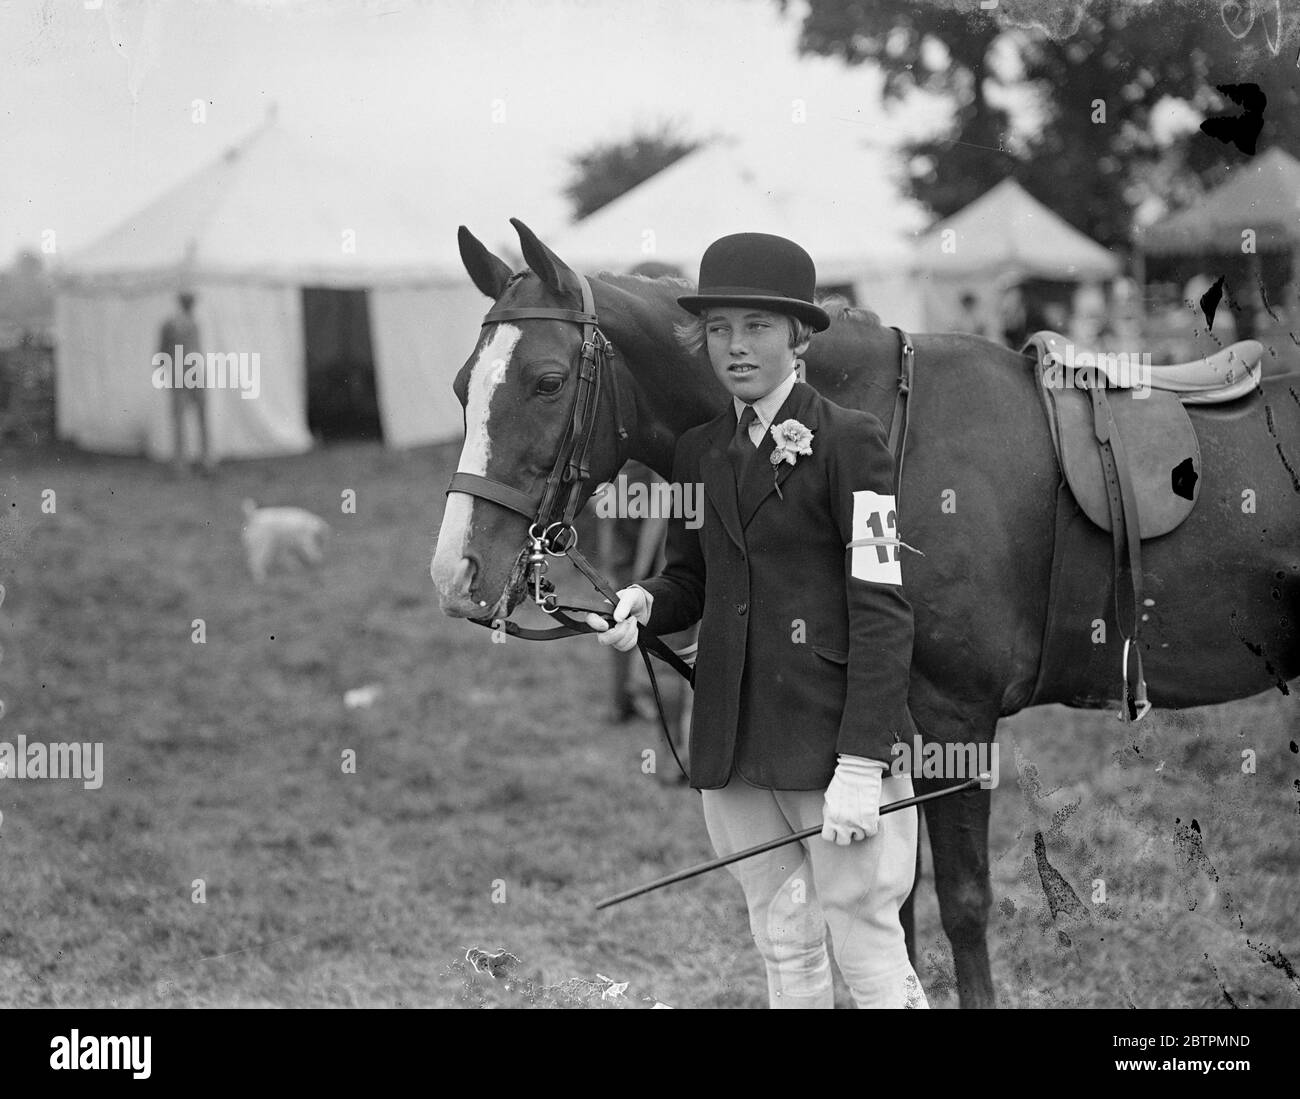 Étoile du spectacle . Le salon agricole de Bicester a eu lieu à Bicester , Oxfordshire . Photos , Miss Molly Ryder Richardson avec ' Royal Star ' , le poney de l'hon Noreen Stonor ' . 1er septembre 1936 . Légende originale de négatif Banque D'Images